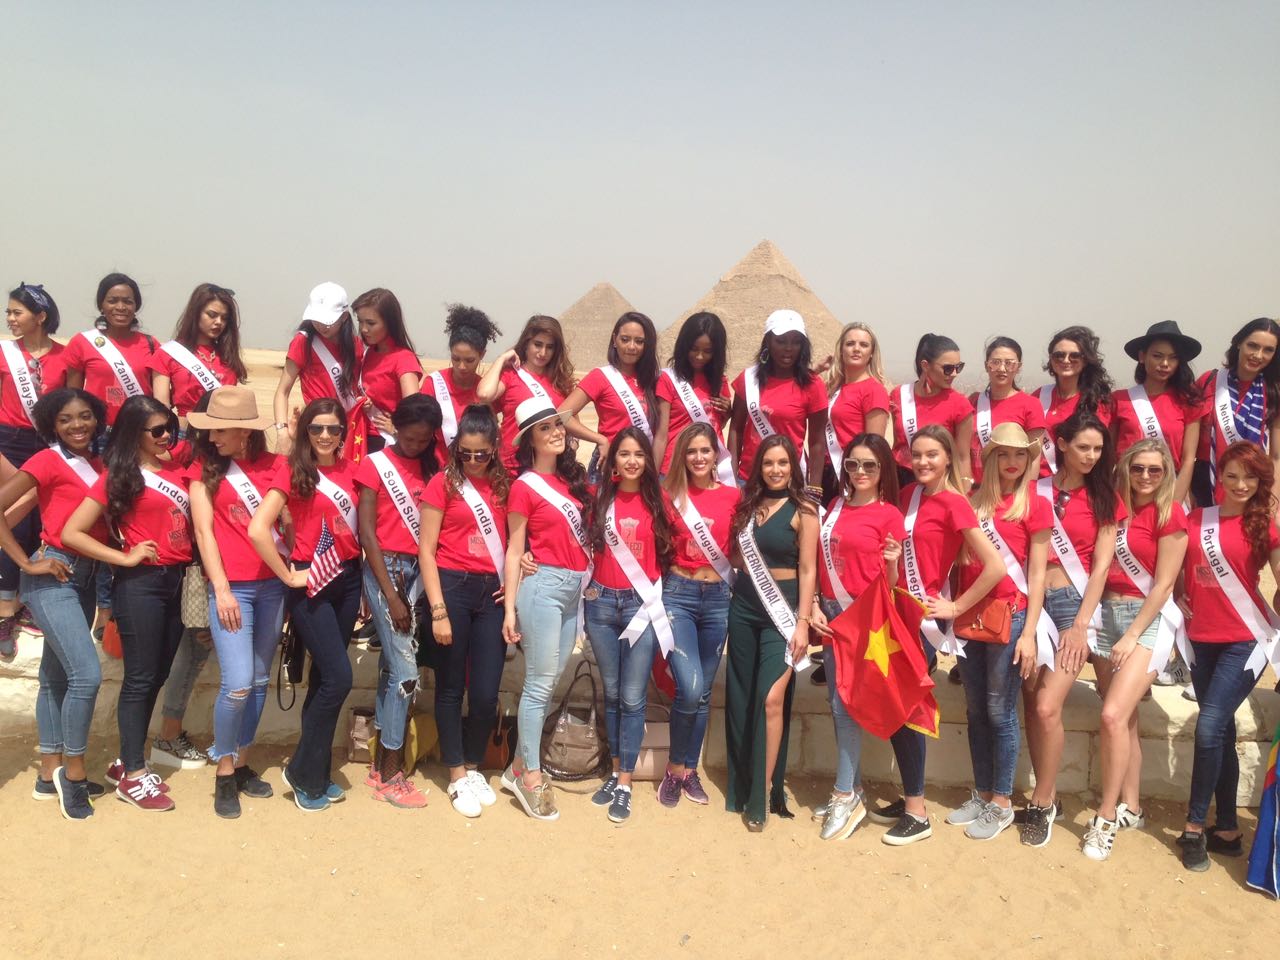 ملكات جمال العالم في منطقة أهرامات الجيزة - Copy